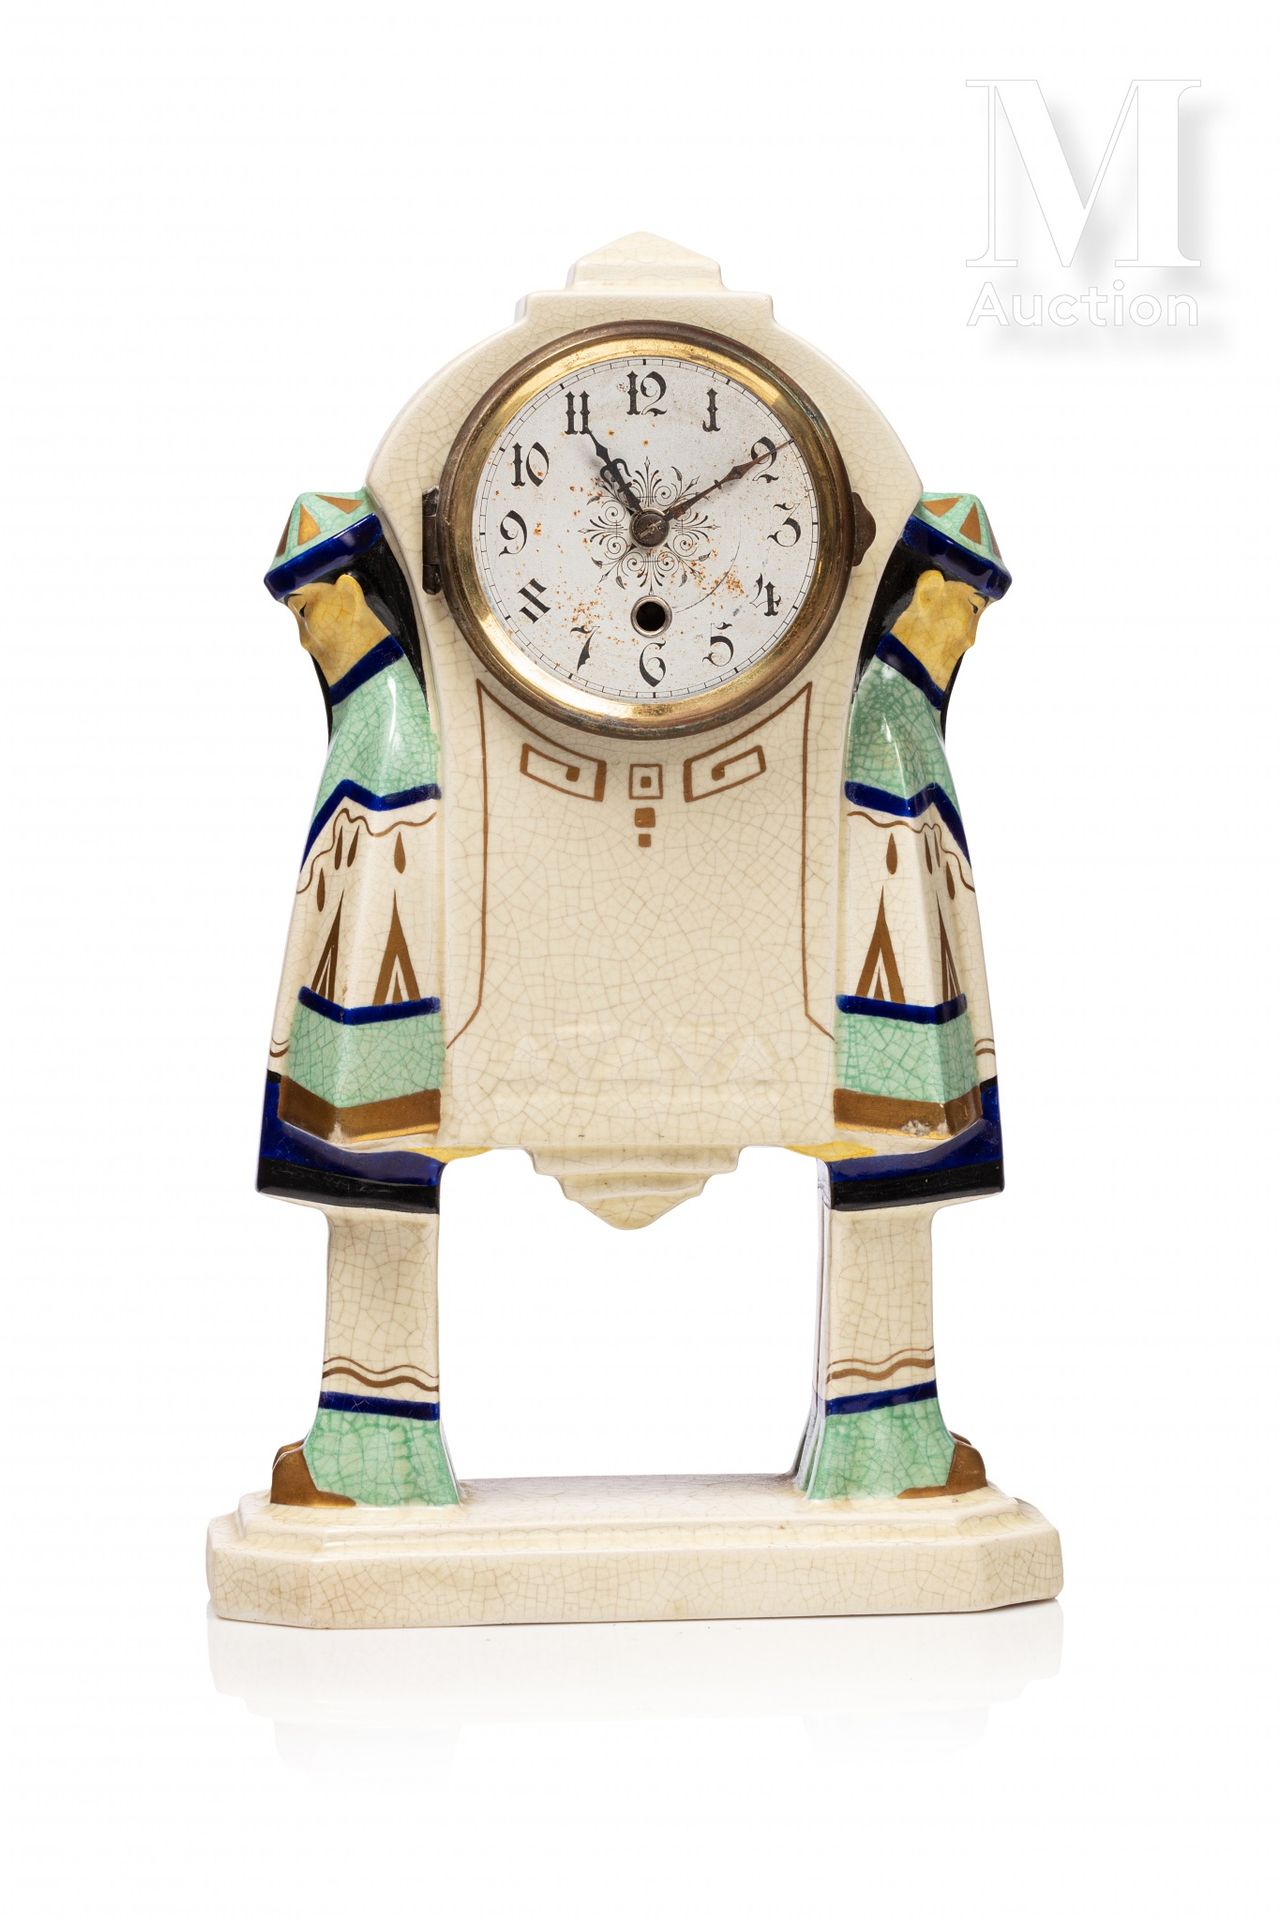 ORCHIES ORCHIES

"Reloj chino".

Escultura de barro recubierta de esmaltes polic&hellip;